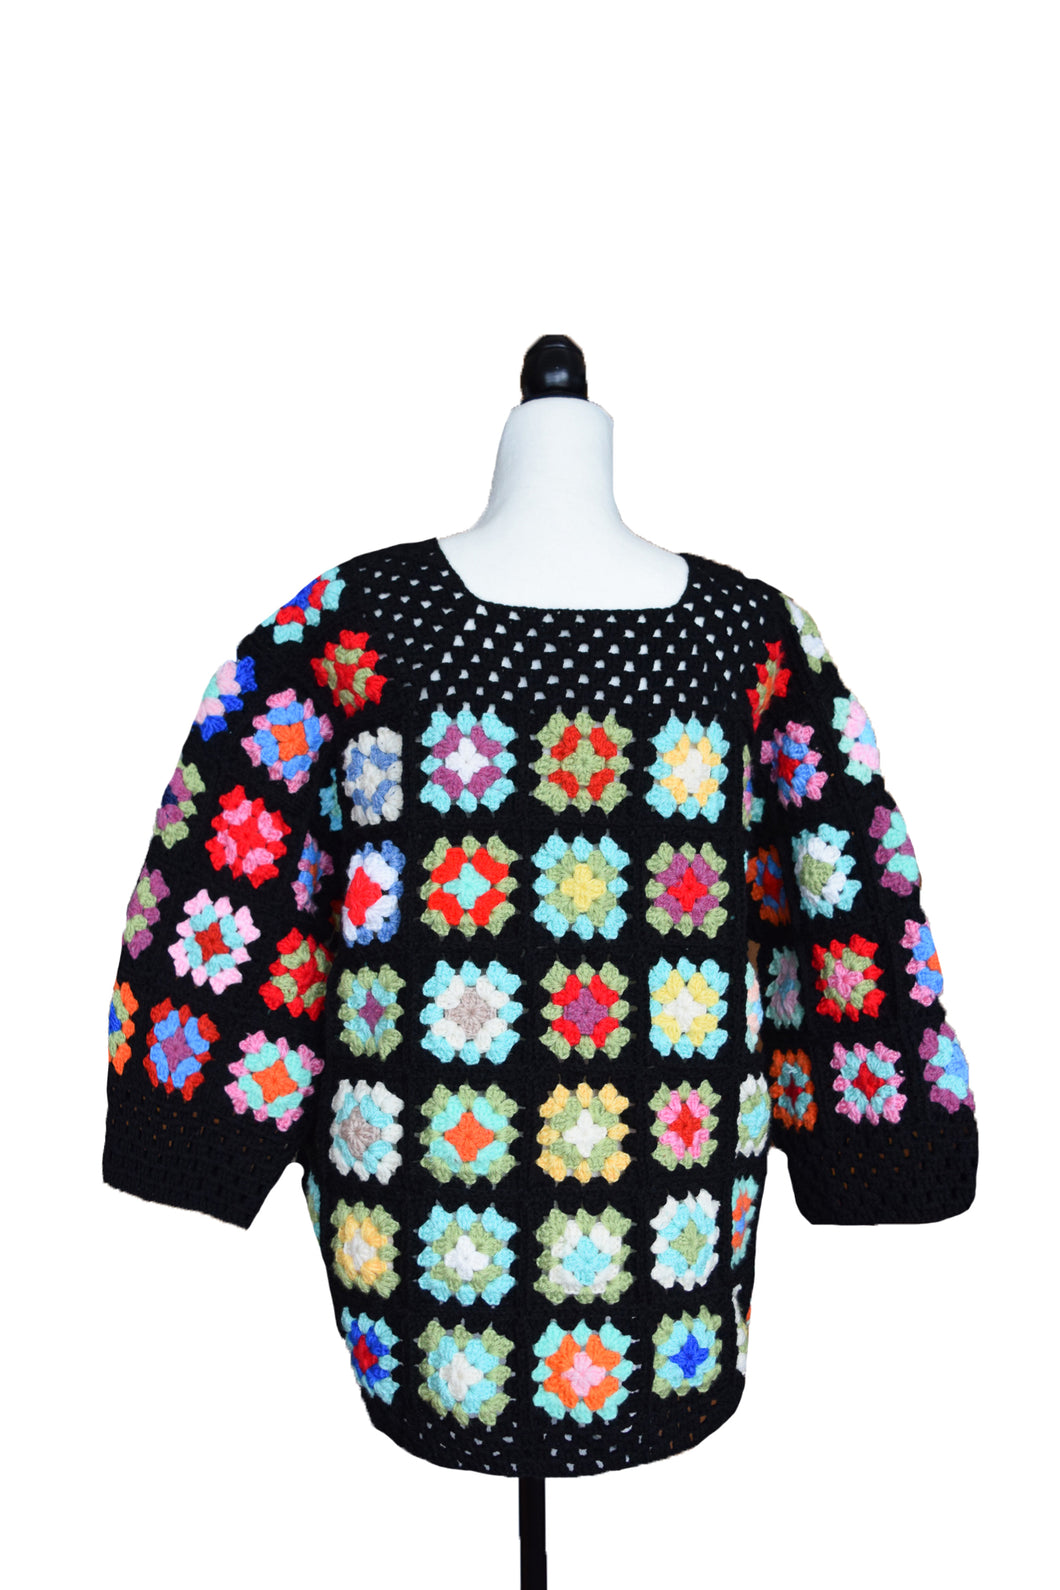 70's Crochet Sweater